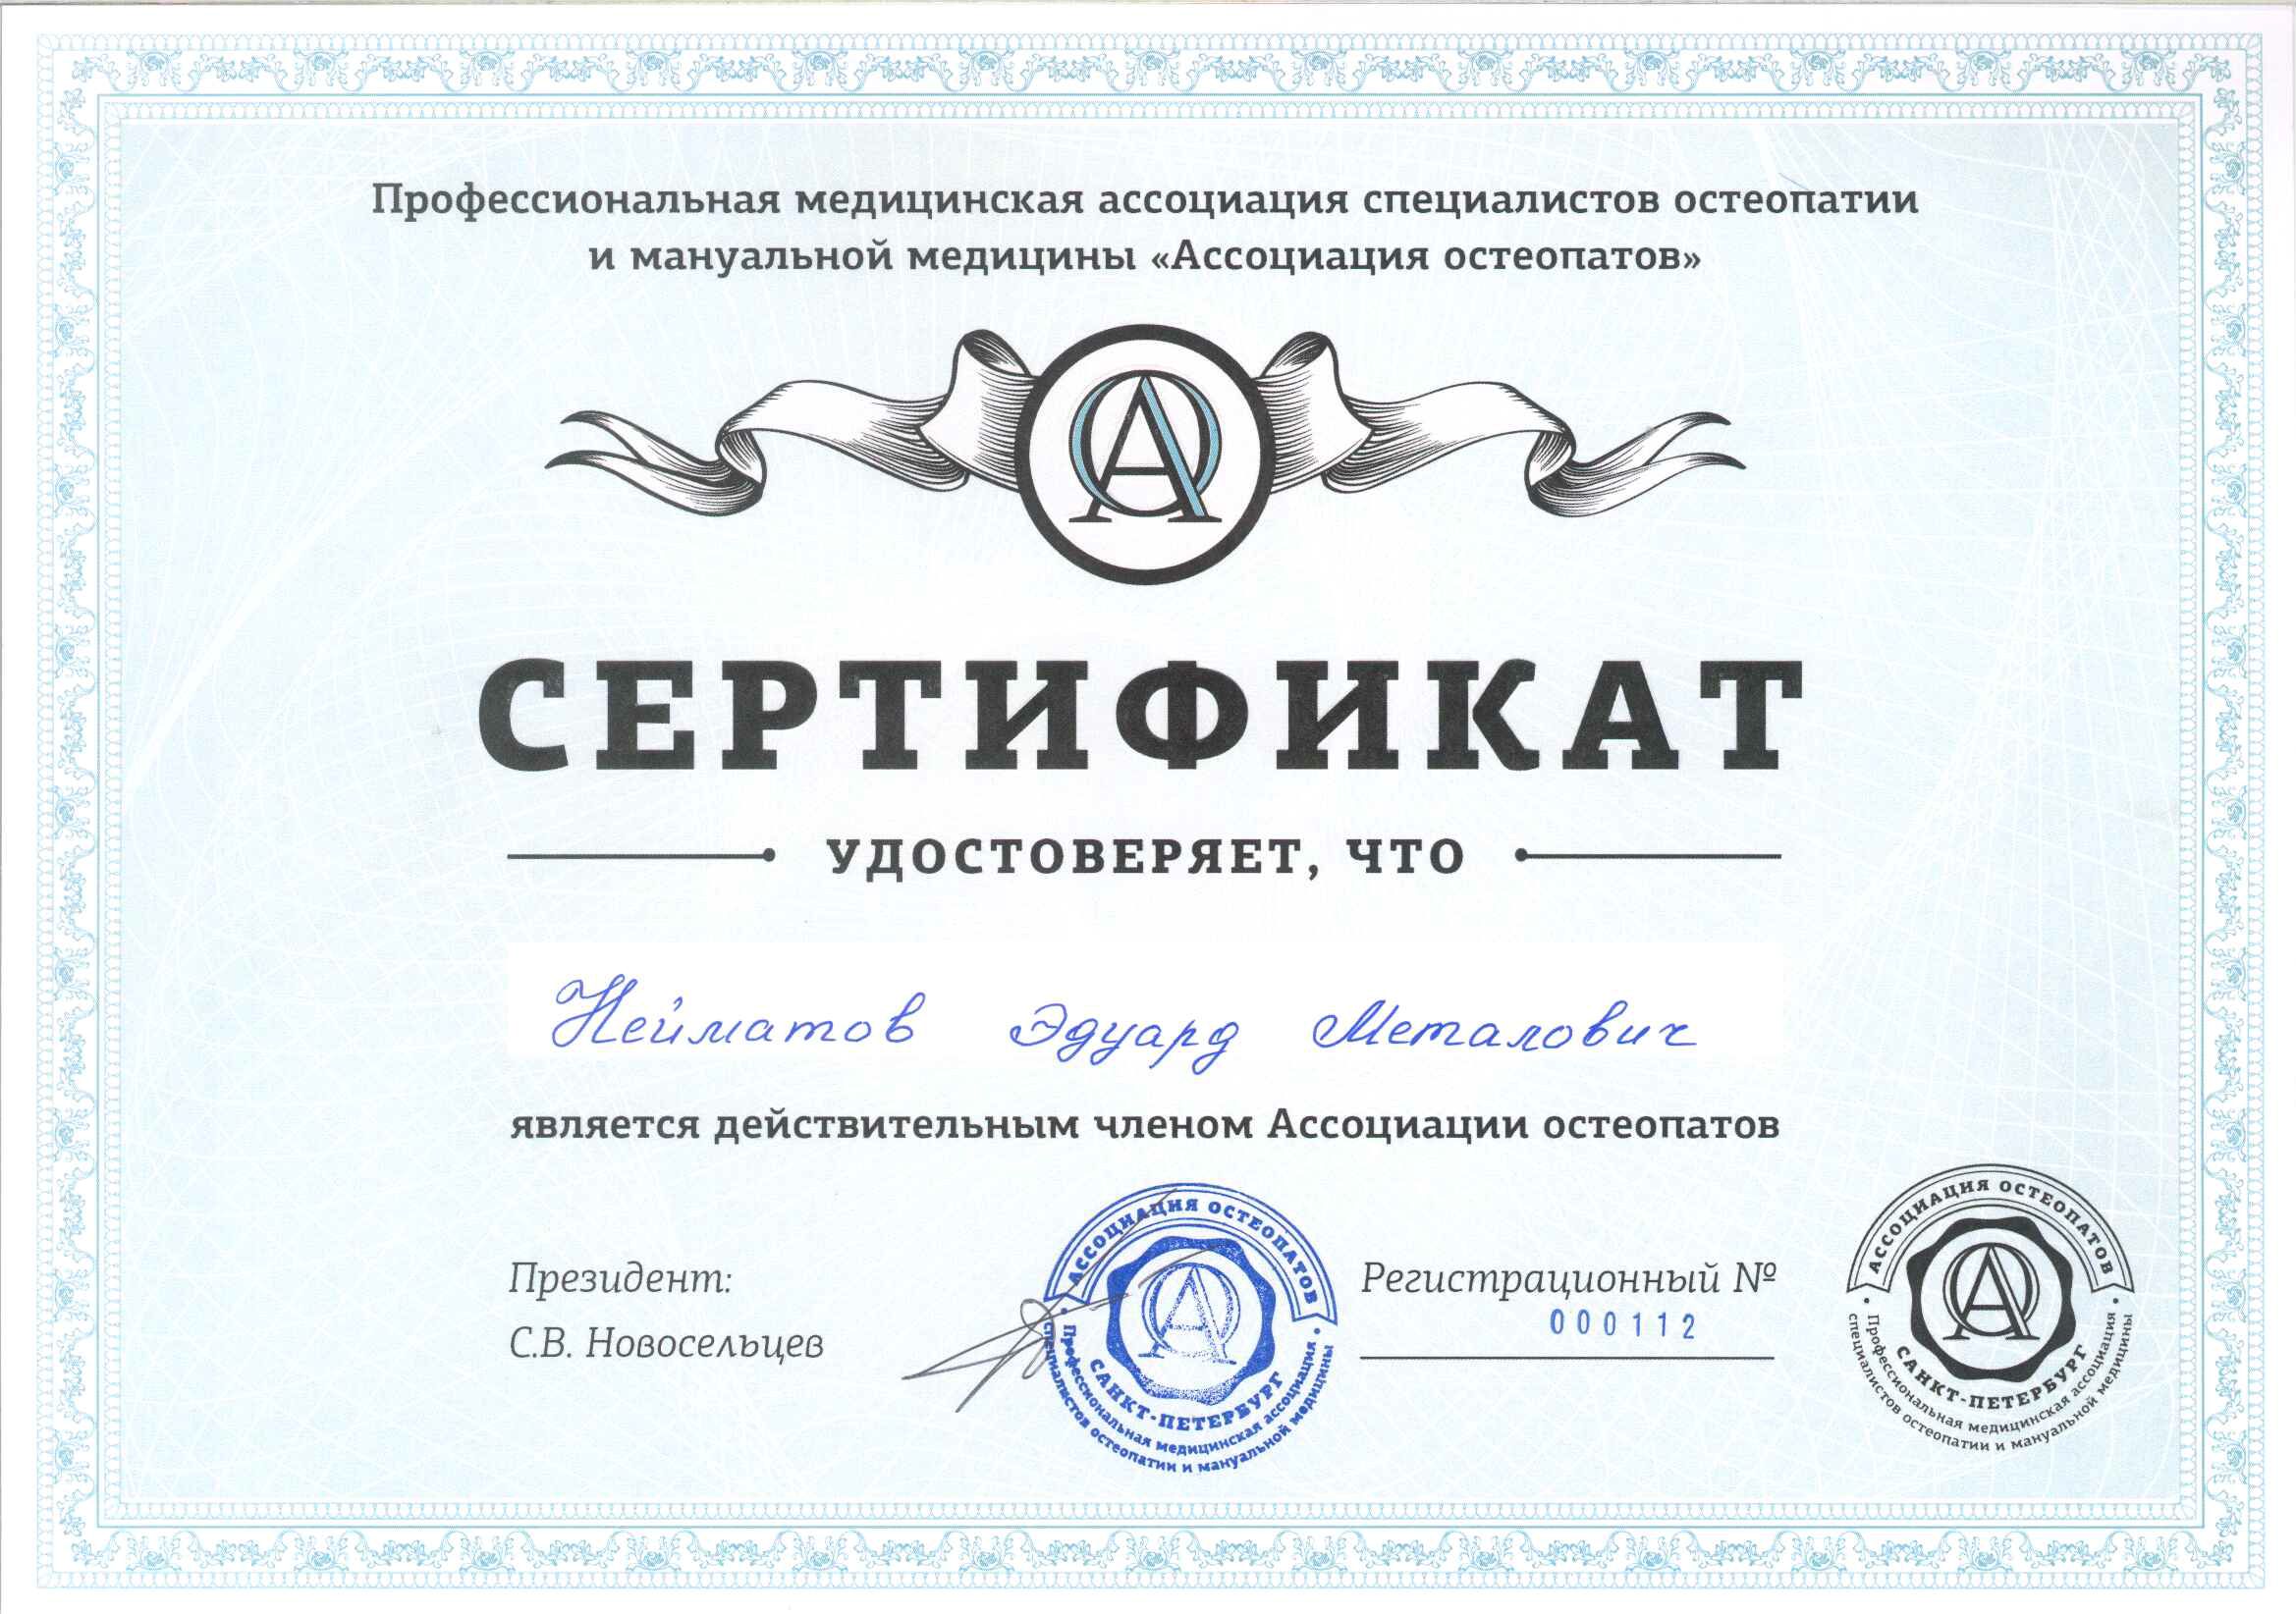 <p>Сертификат - действительный член&nbsp; Ассоциации остеопатов</p>